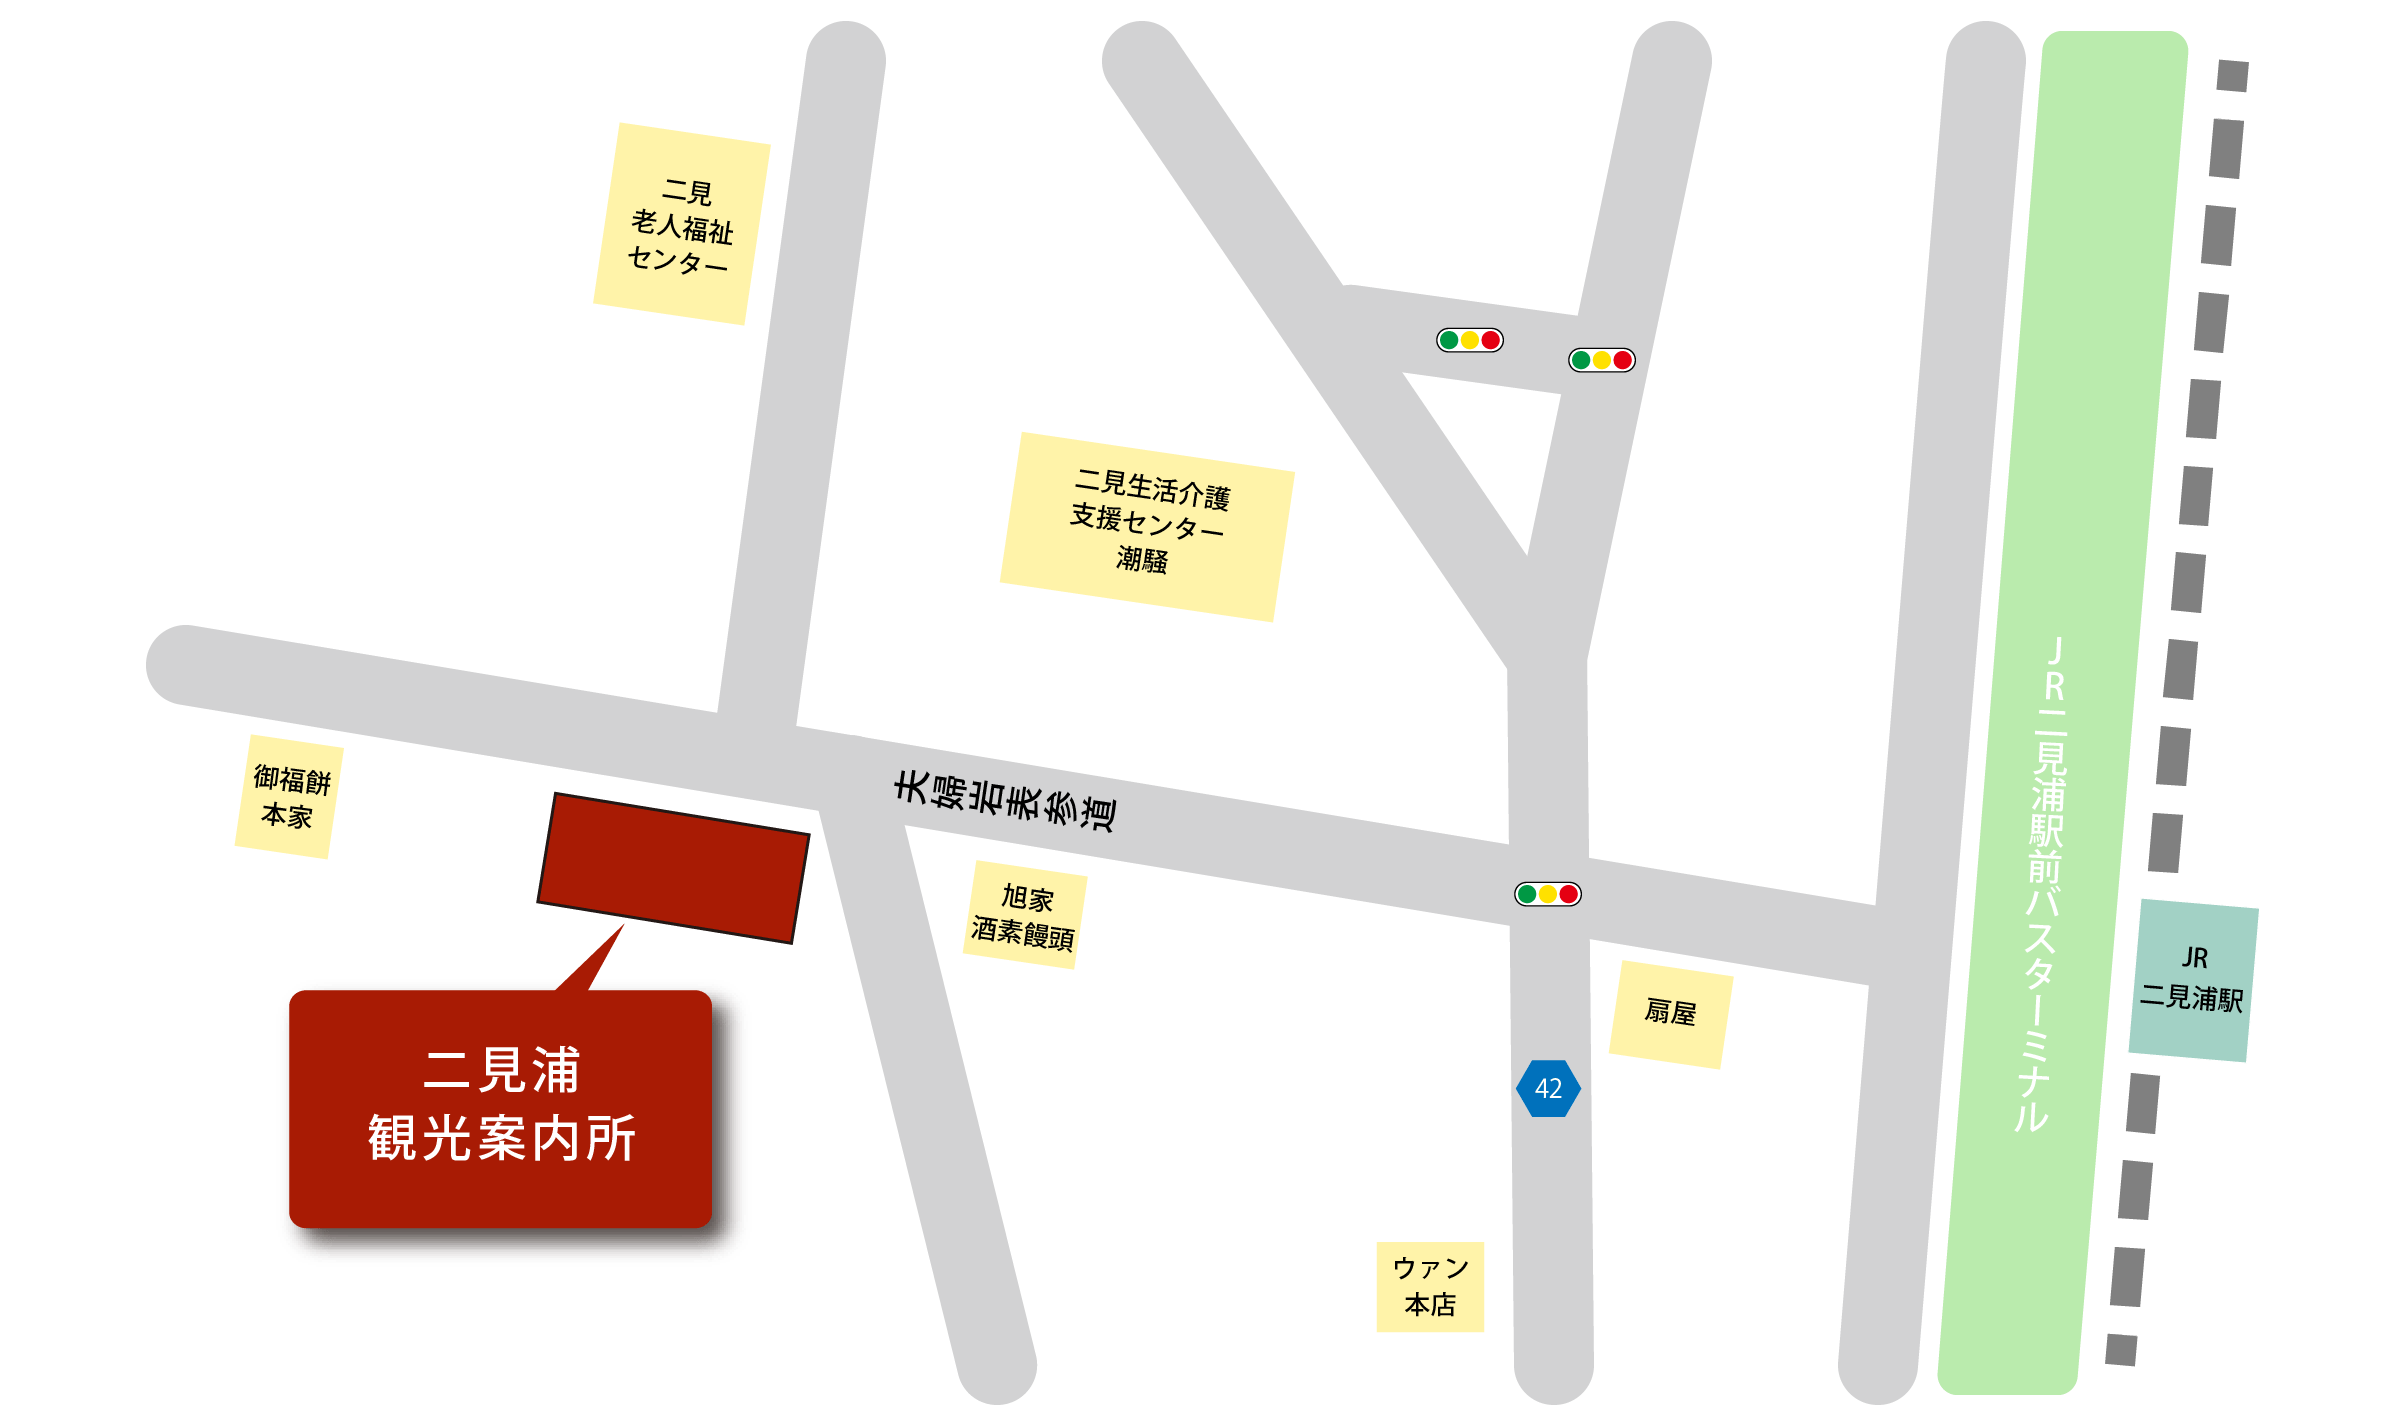 二見浦観光案内所周辺マップ